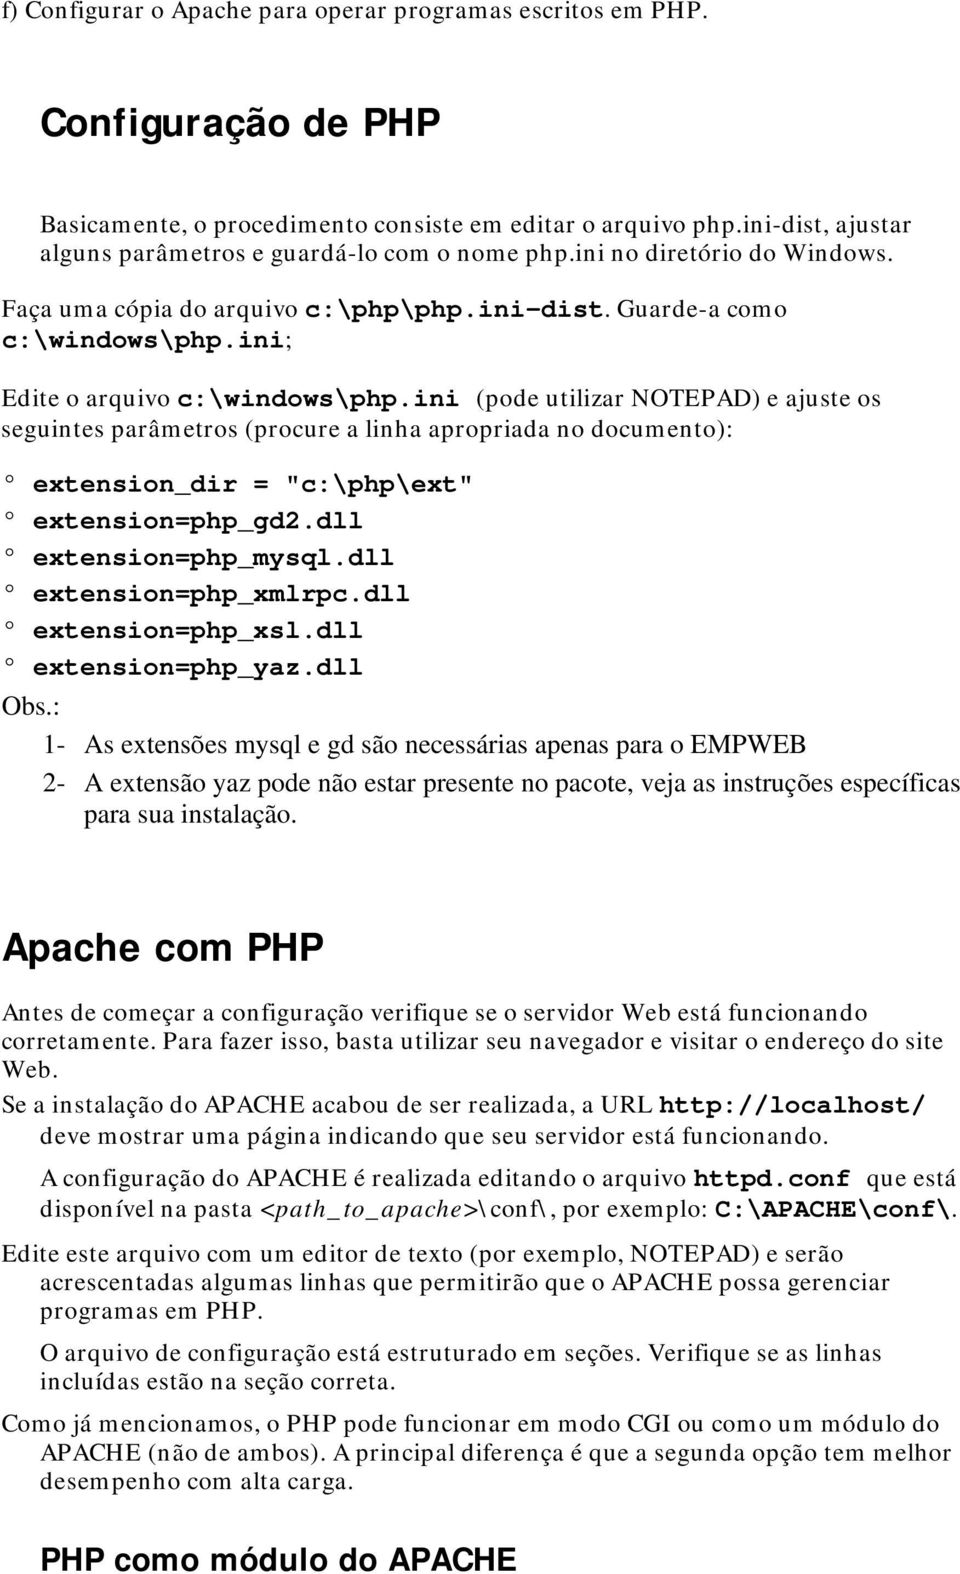 ini; Edite o arquivo c:\windows\php.ini (pode utilizar NOTEPAD) e ajuste os seguintes parâmetros (procure a linha apropriada no documento): extension_dir = "c:\php\ext" extension=php_gd2.